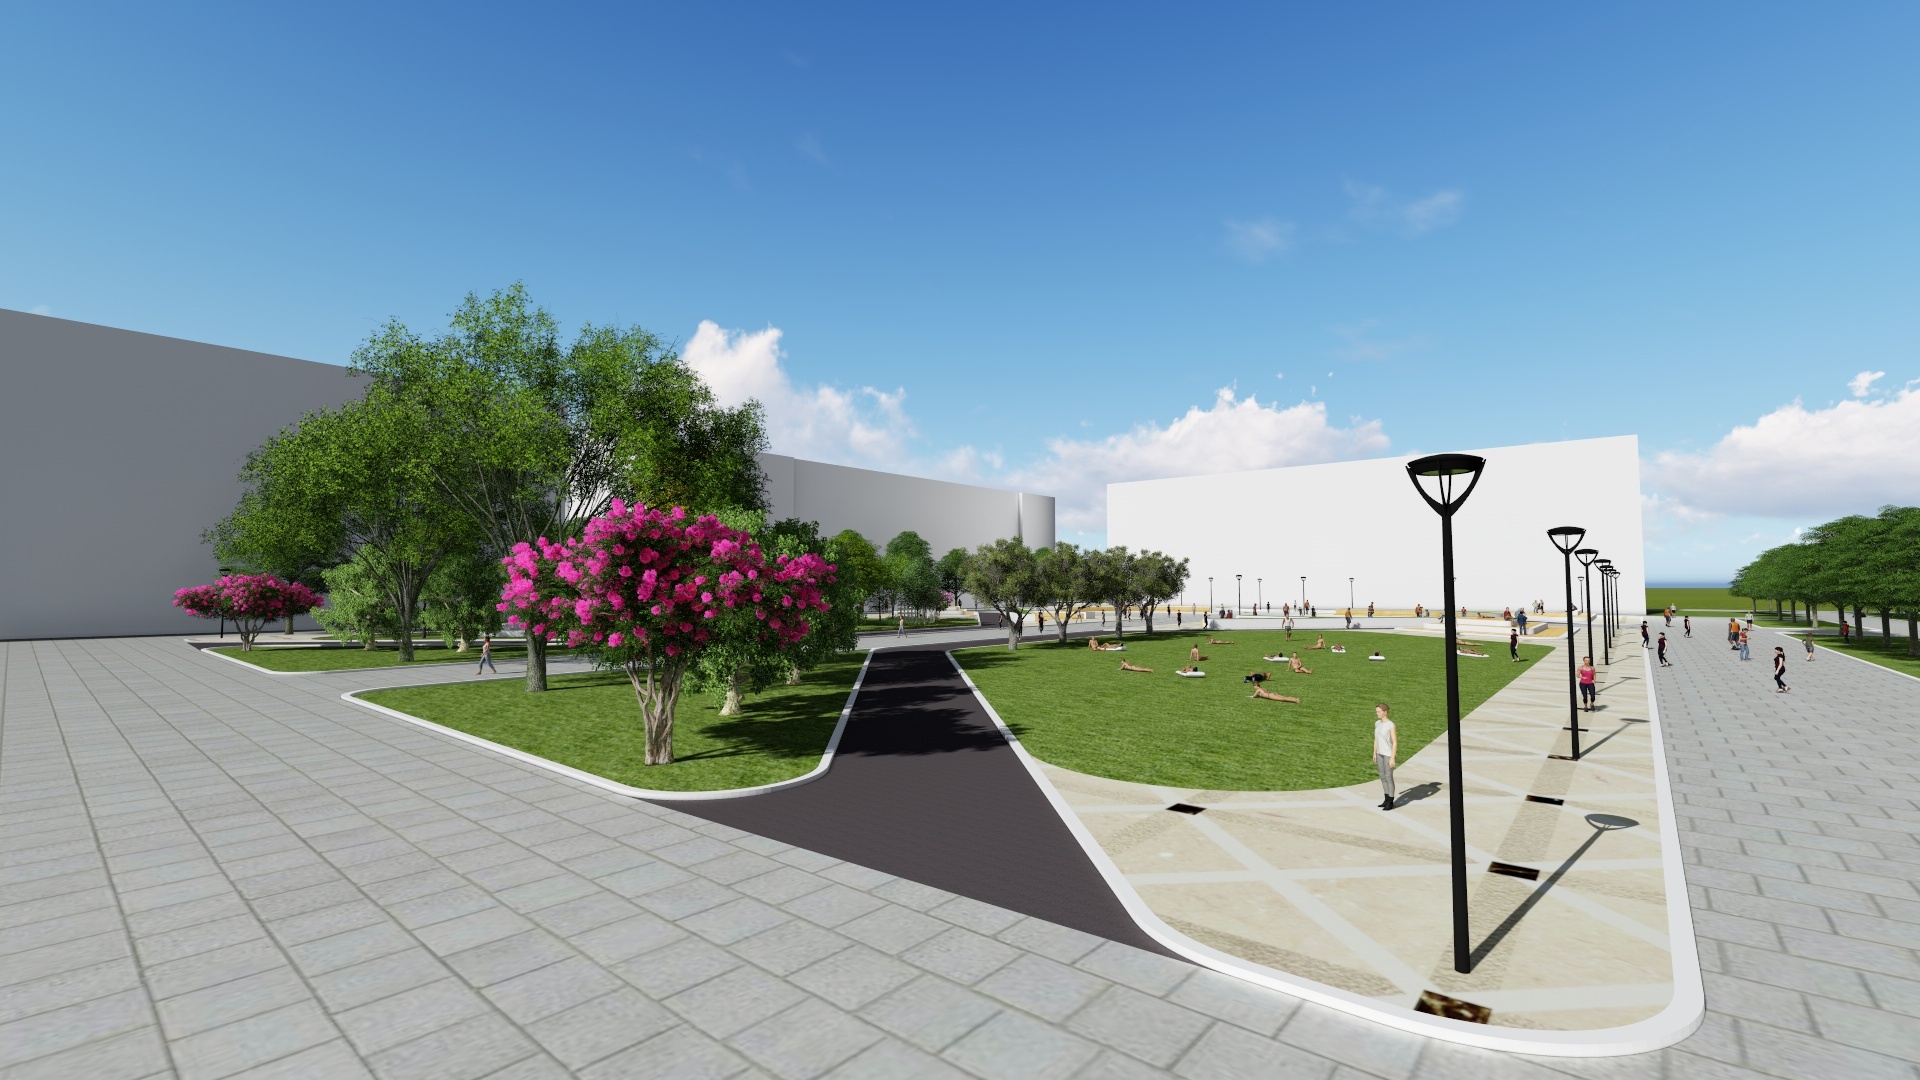 小区广场景观设计图免费下载 - 景观规划设计 - 土木工程网